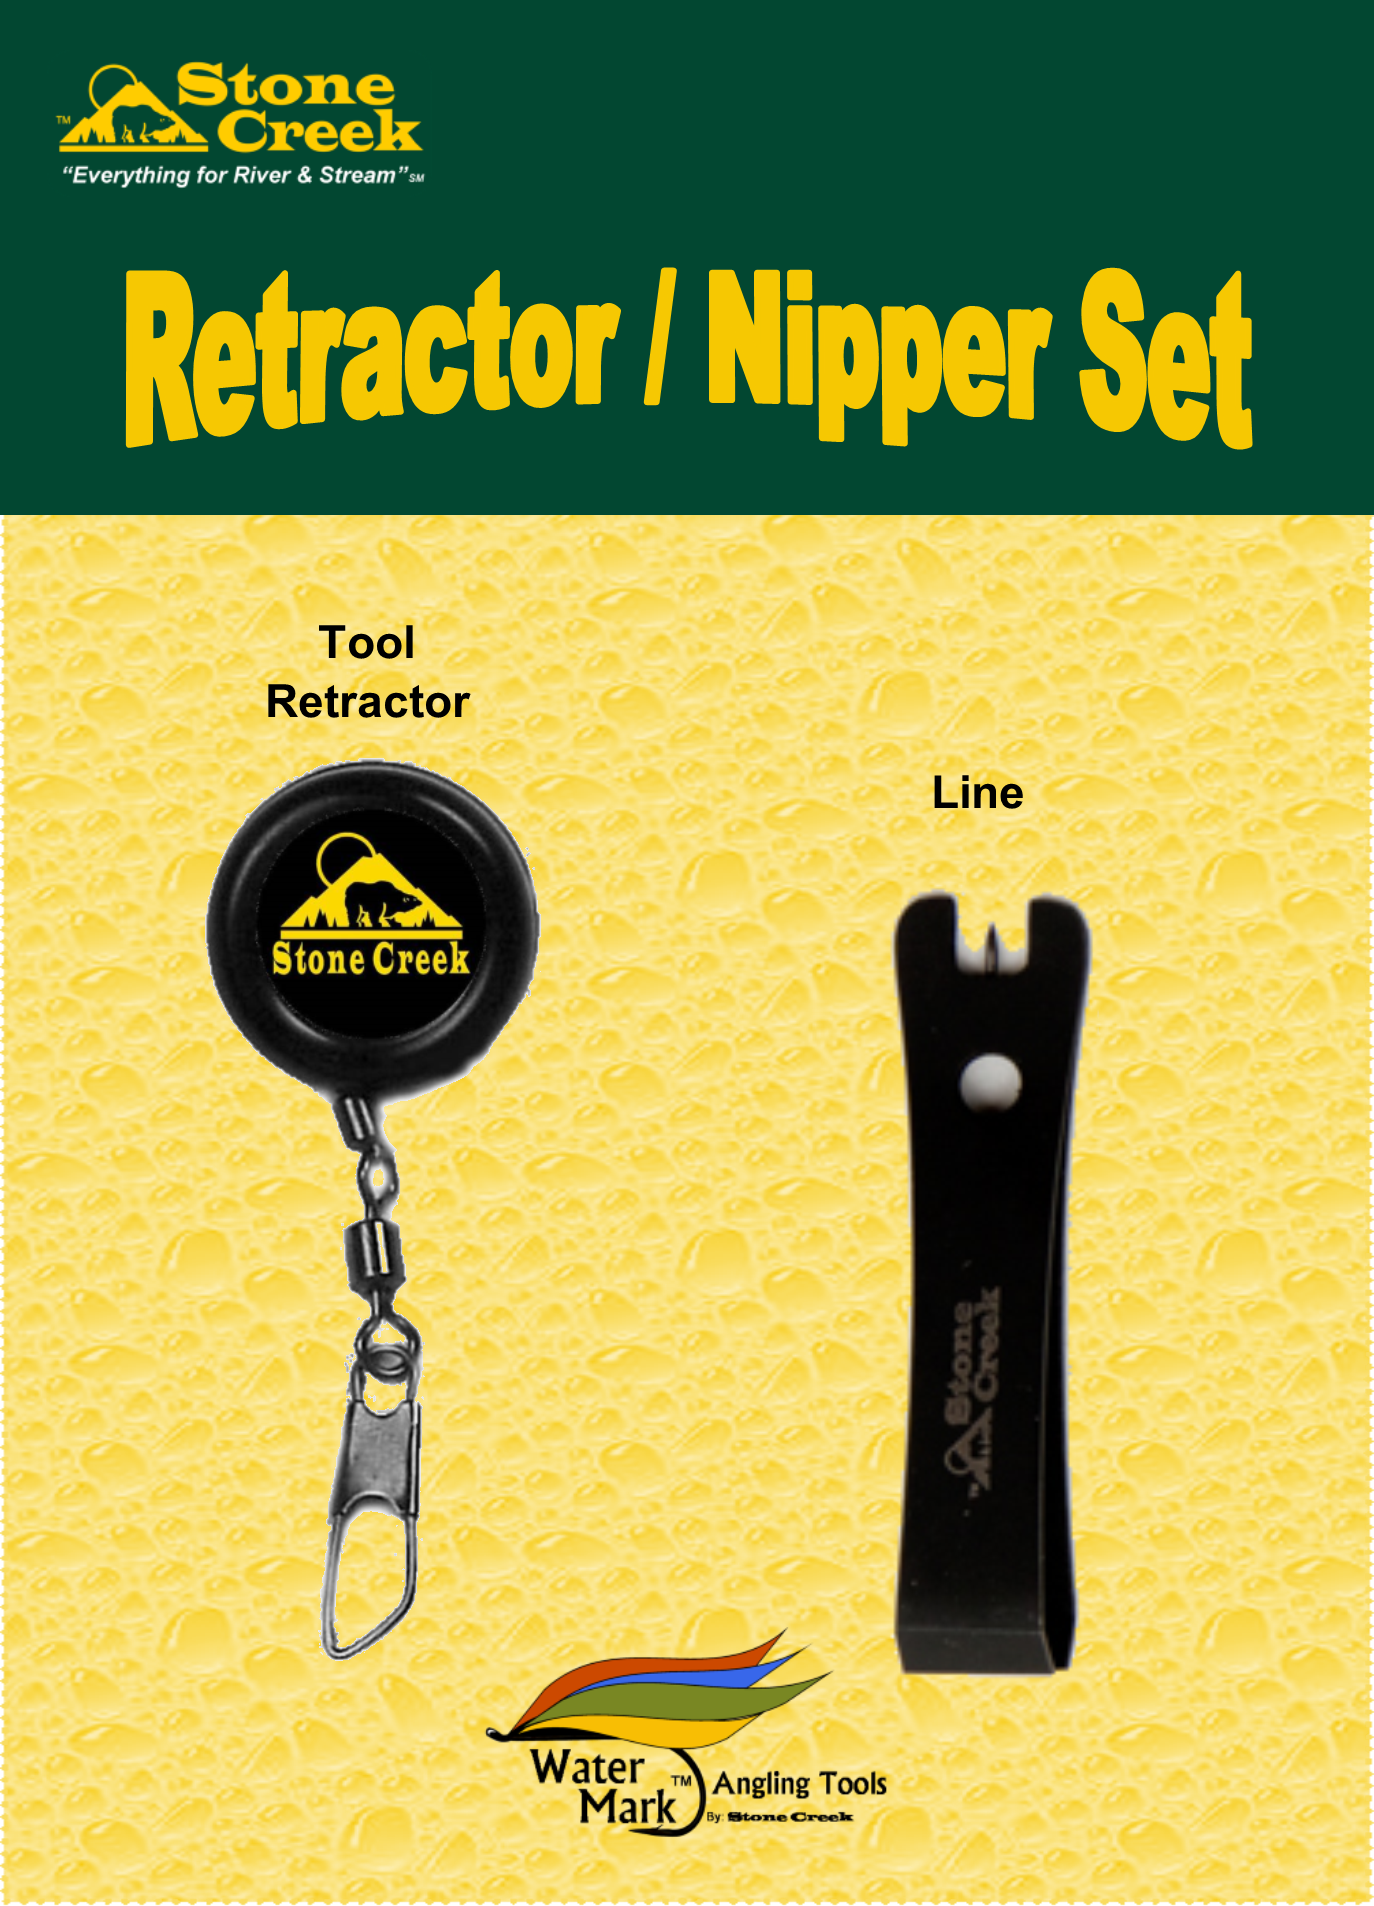 Retractor / Nipper Sets